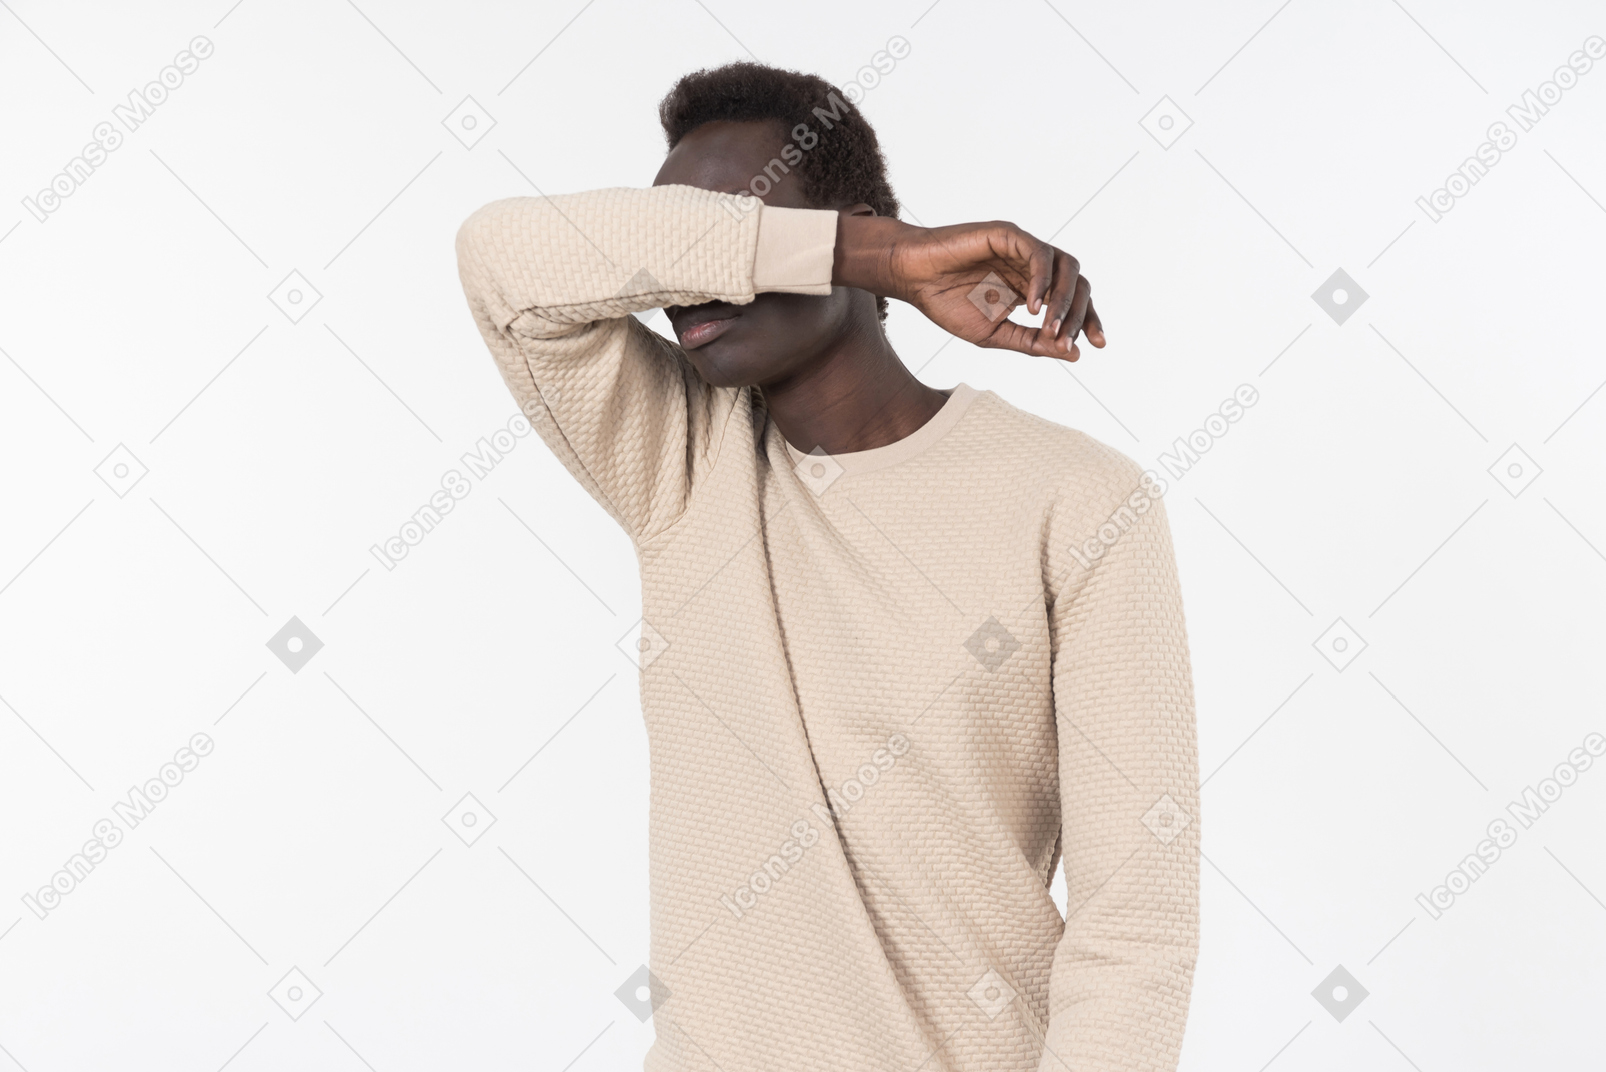 Um jovem negro em um suéter cinza sozinho no fundo branco